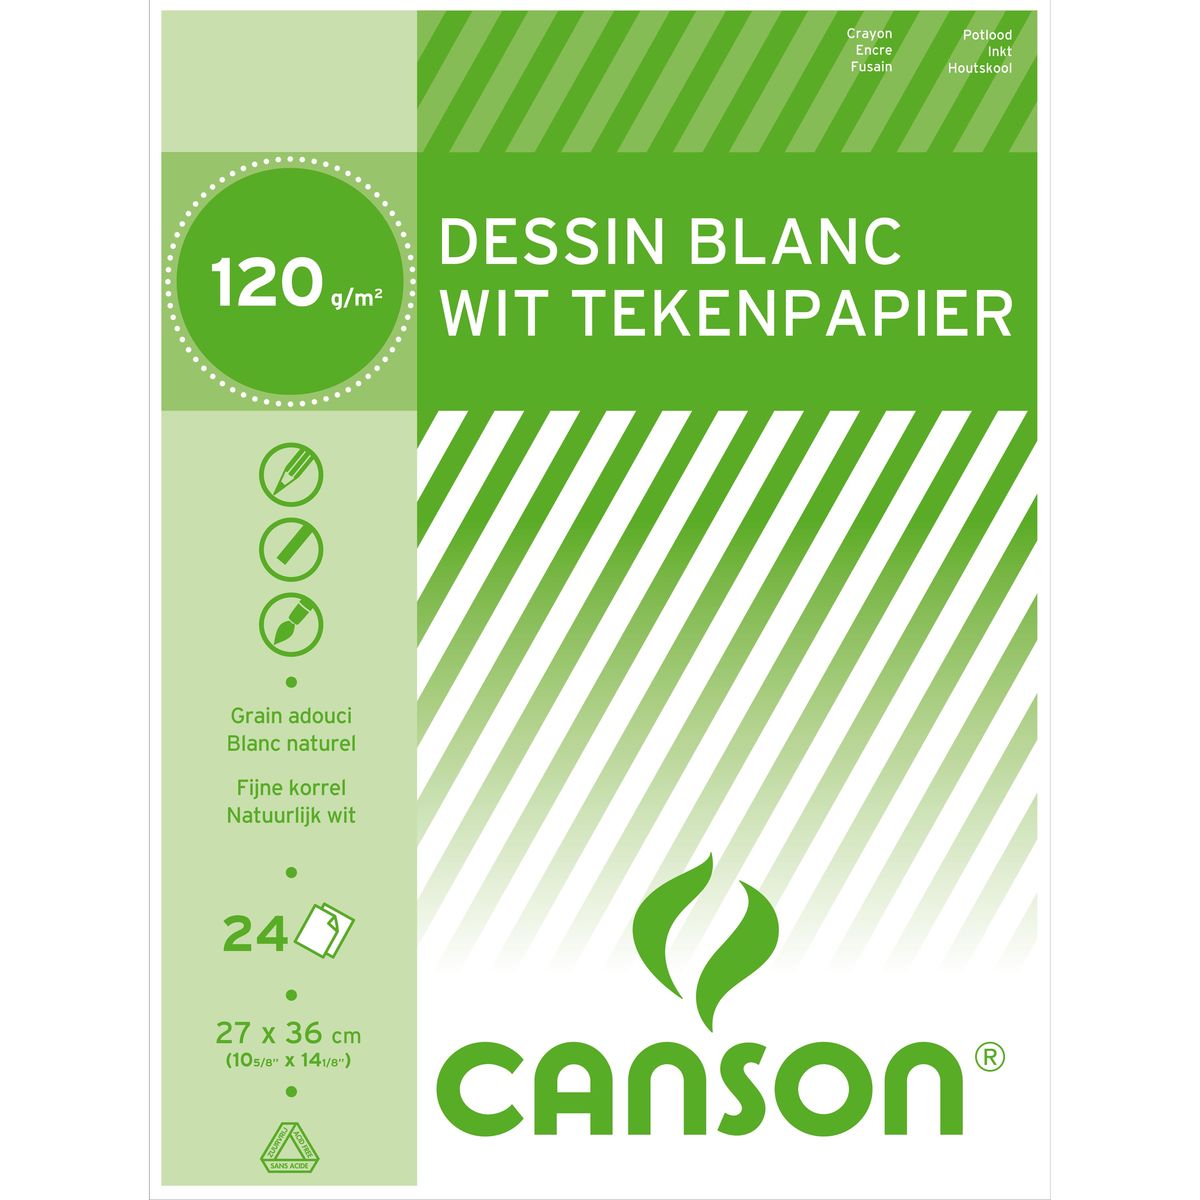 Canson Bloc Dessin 24 feuilles 120g/m² - Blanc